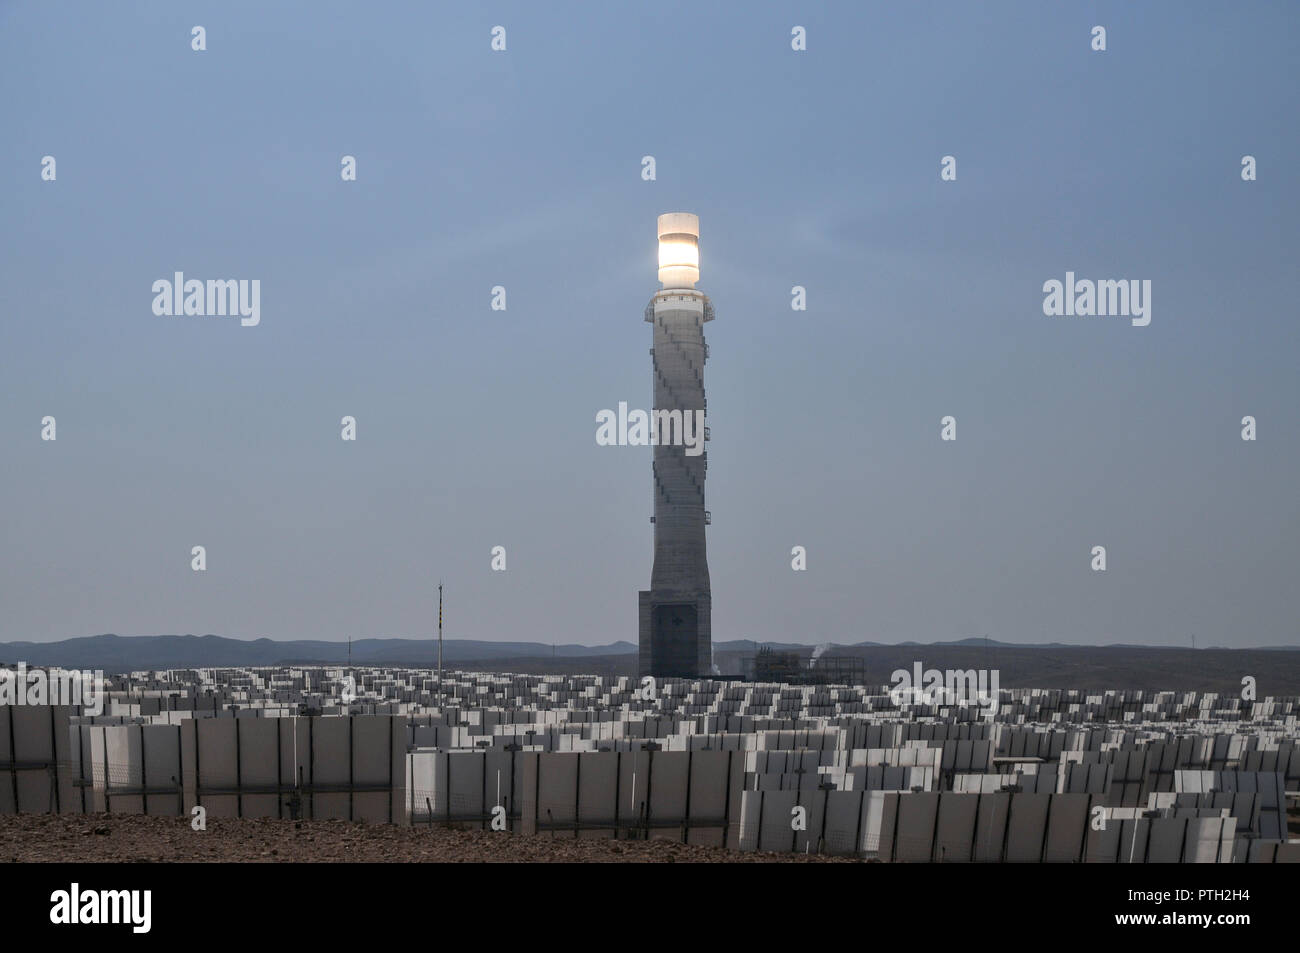 La energía solar Ashalim Station es una estación de energía solar térmica en el desierto de Negev, cerca del Kibbutz de Ashalim, en Israel. La estación proporcionará Foto de stock